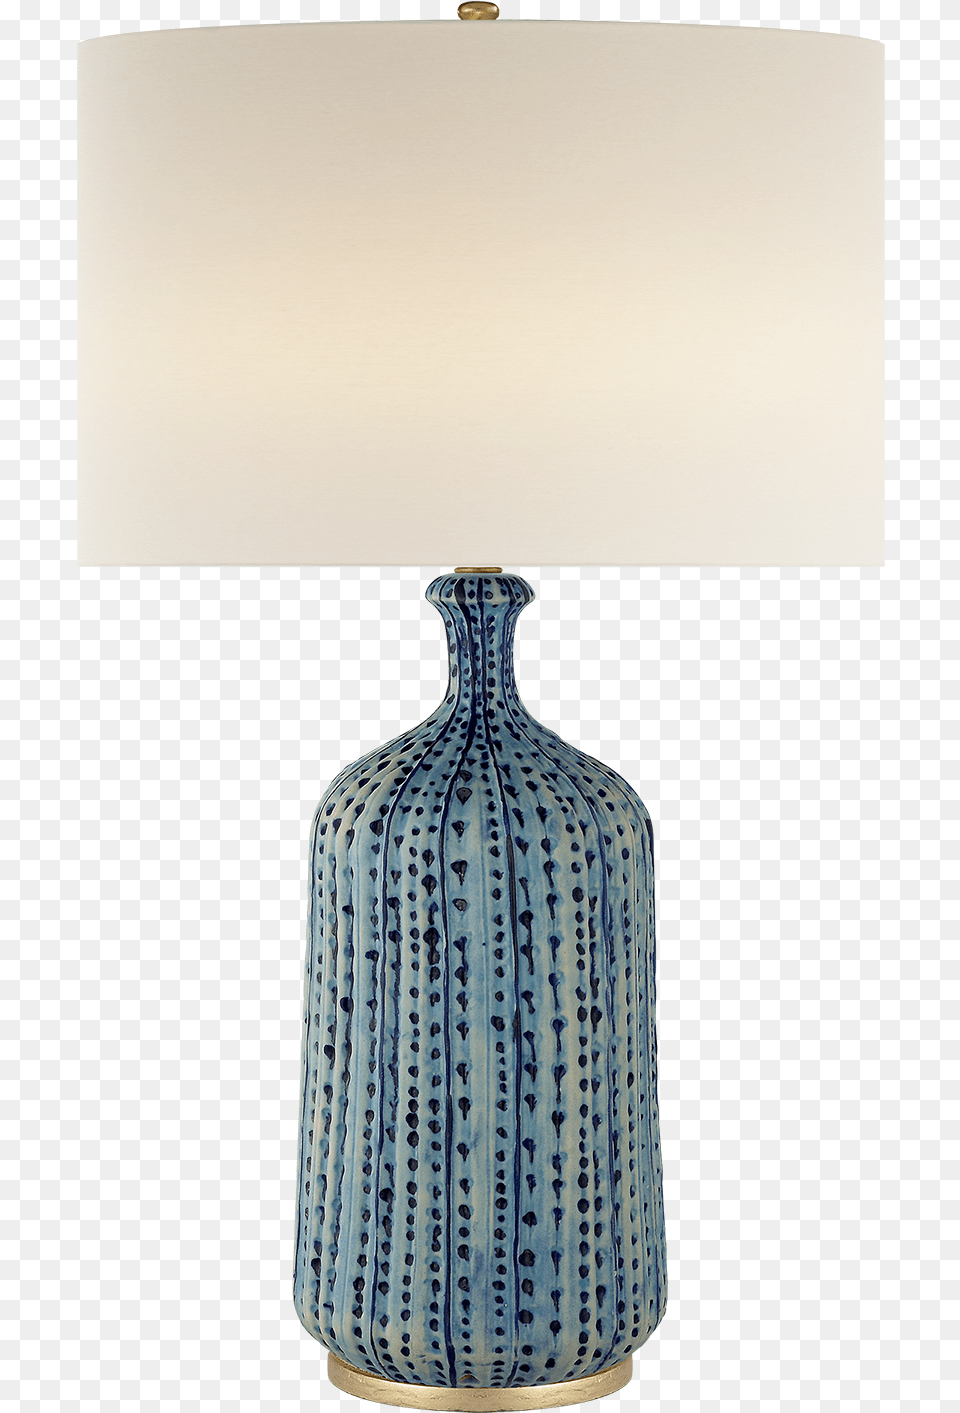 Lighting, Lamp, Table Lamp, Lampshade, Art Png Image